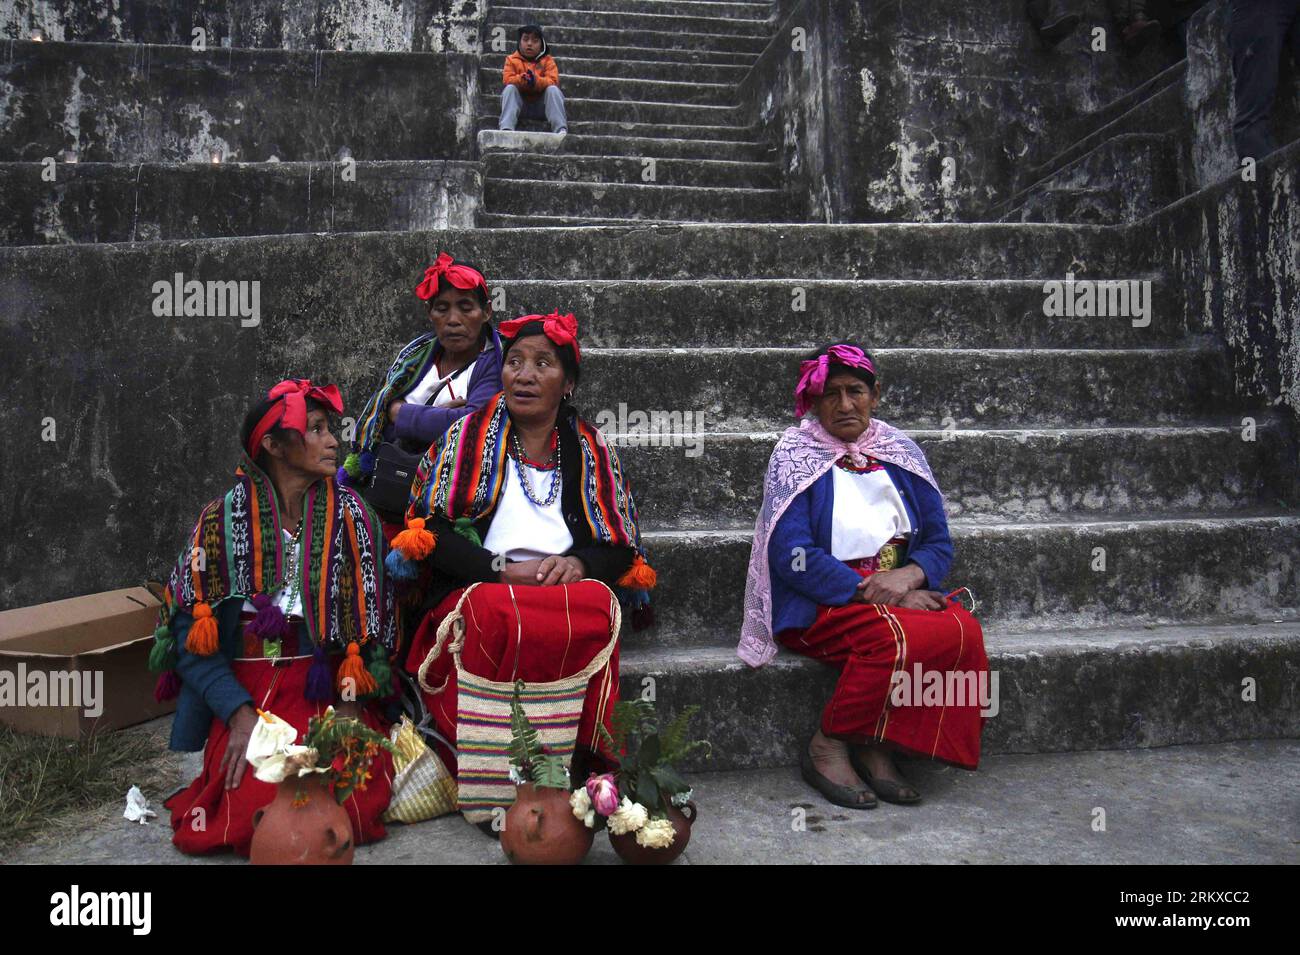 Bildnummer : 58944744 Datum : 21.12.2012 Copyright : imago/Xinhua (121222) -- HUEHUETENANGO, 21 décembre 2012 (Xinhua) -- les femmes se préparent à participer à une cérémonie maya pour recevoir le nouveau cycle du calendrier maya, sur le site archéologique de Zaculeu, à Huehuetenango, Guatemala, le 21 décembre 2012. (Xinhua/Str) (ce) GUATEMALA-HUEHUETENANGO-MAYAN CALENDAR PUBLICATIONxNOTxINxCHN Gesellschaft Maya Mayakalender Kalender Weltuntergang Apokalypse Zeremonie xjh x0x premiumd 2012 quer 58944744 Date 21 12 2012 Copyright Imago XINHUA DEC 21 2012 les femmes XINHUA se préparent à prendre part à un Ceremon Maya Banque D'Images